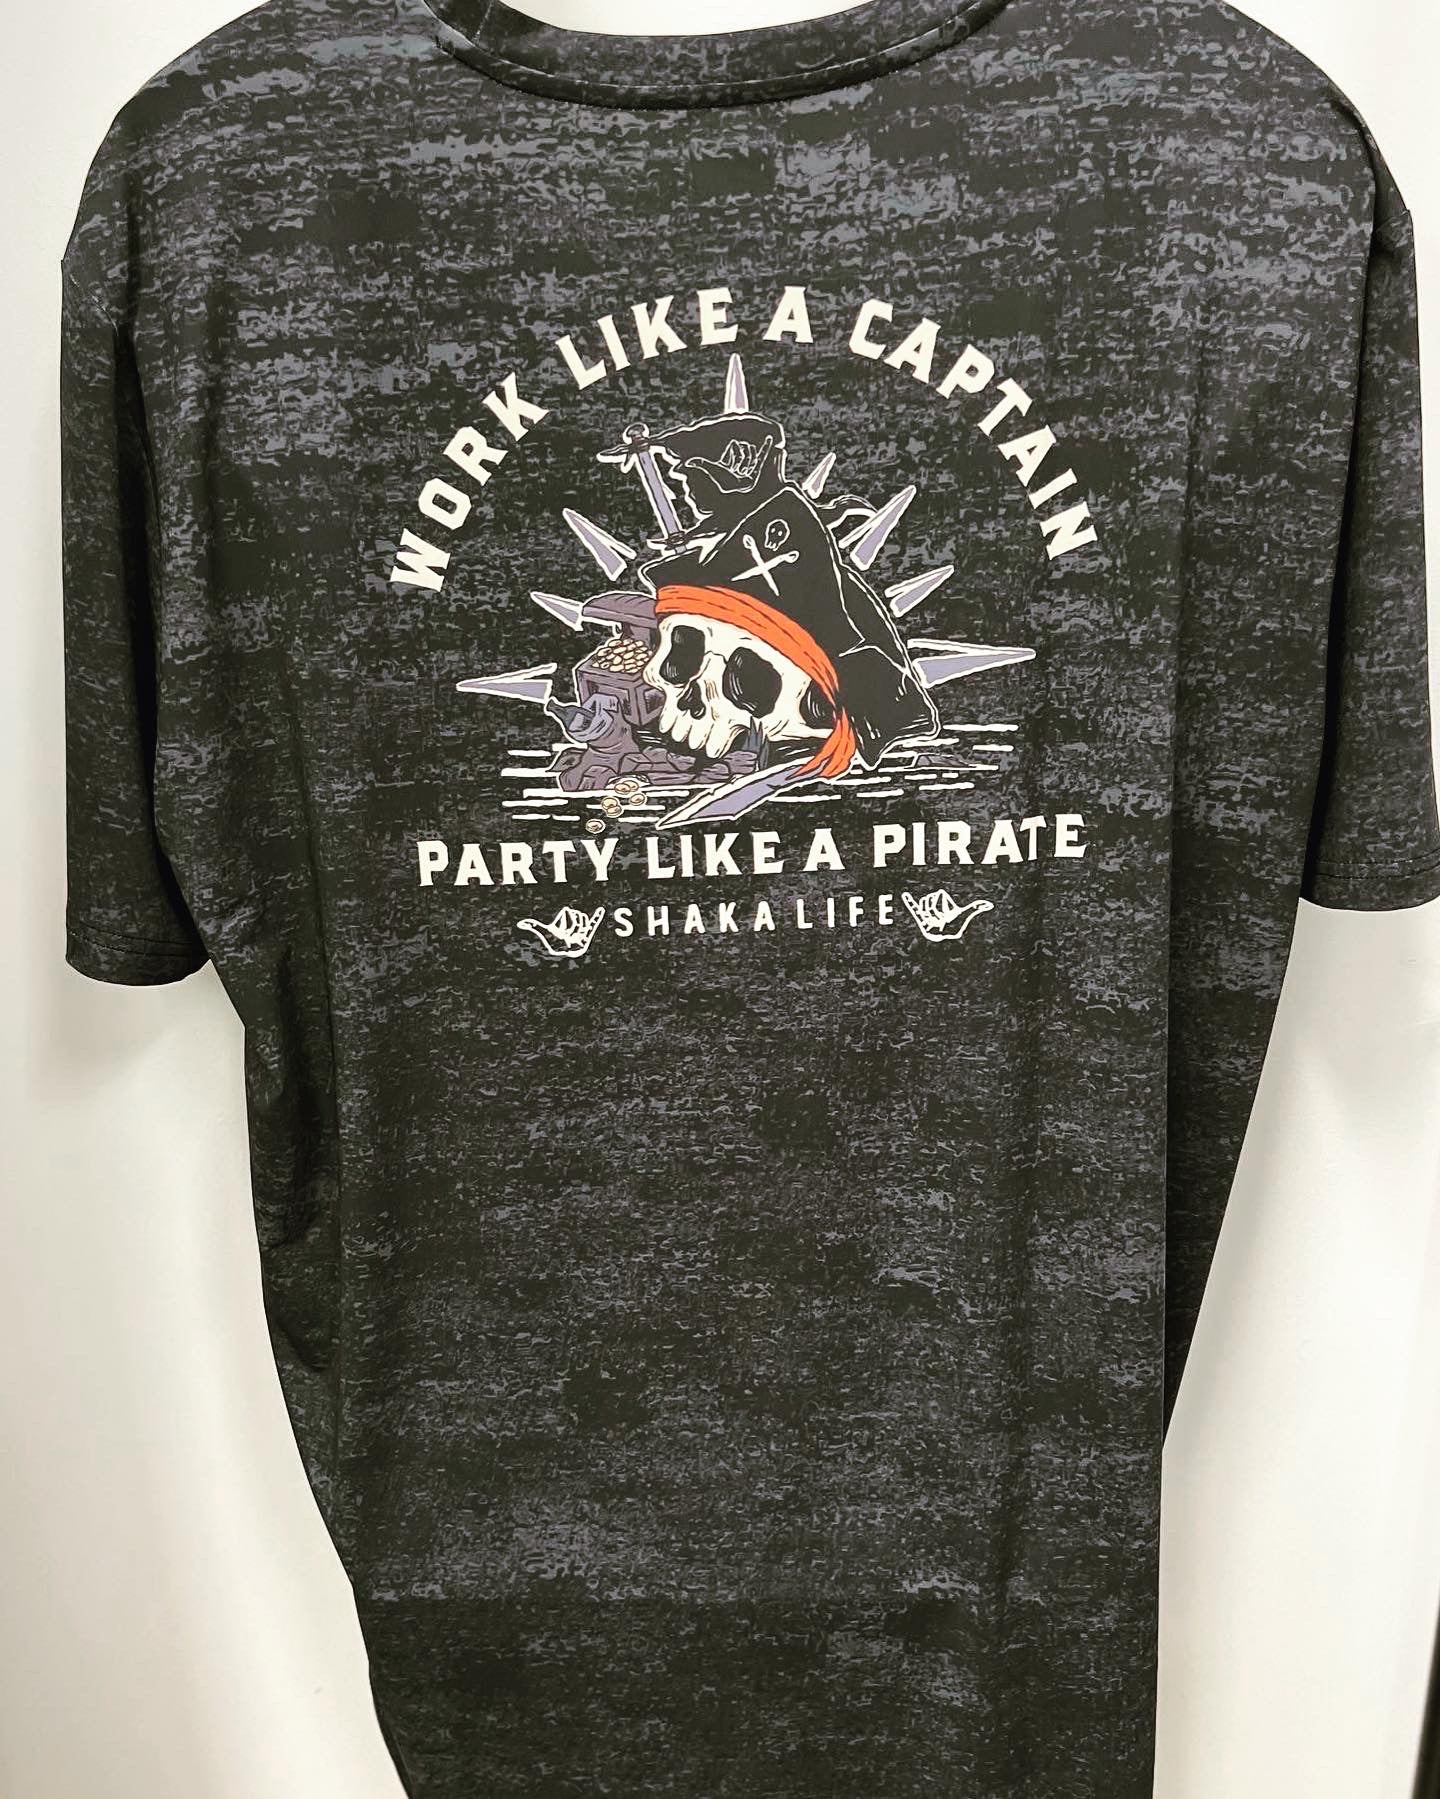 Shaka Life - Work like a Captain, Party Like a Pirate